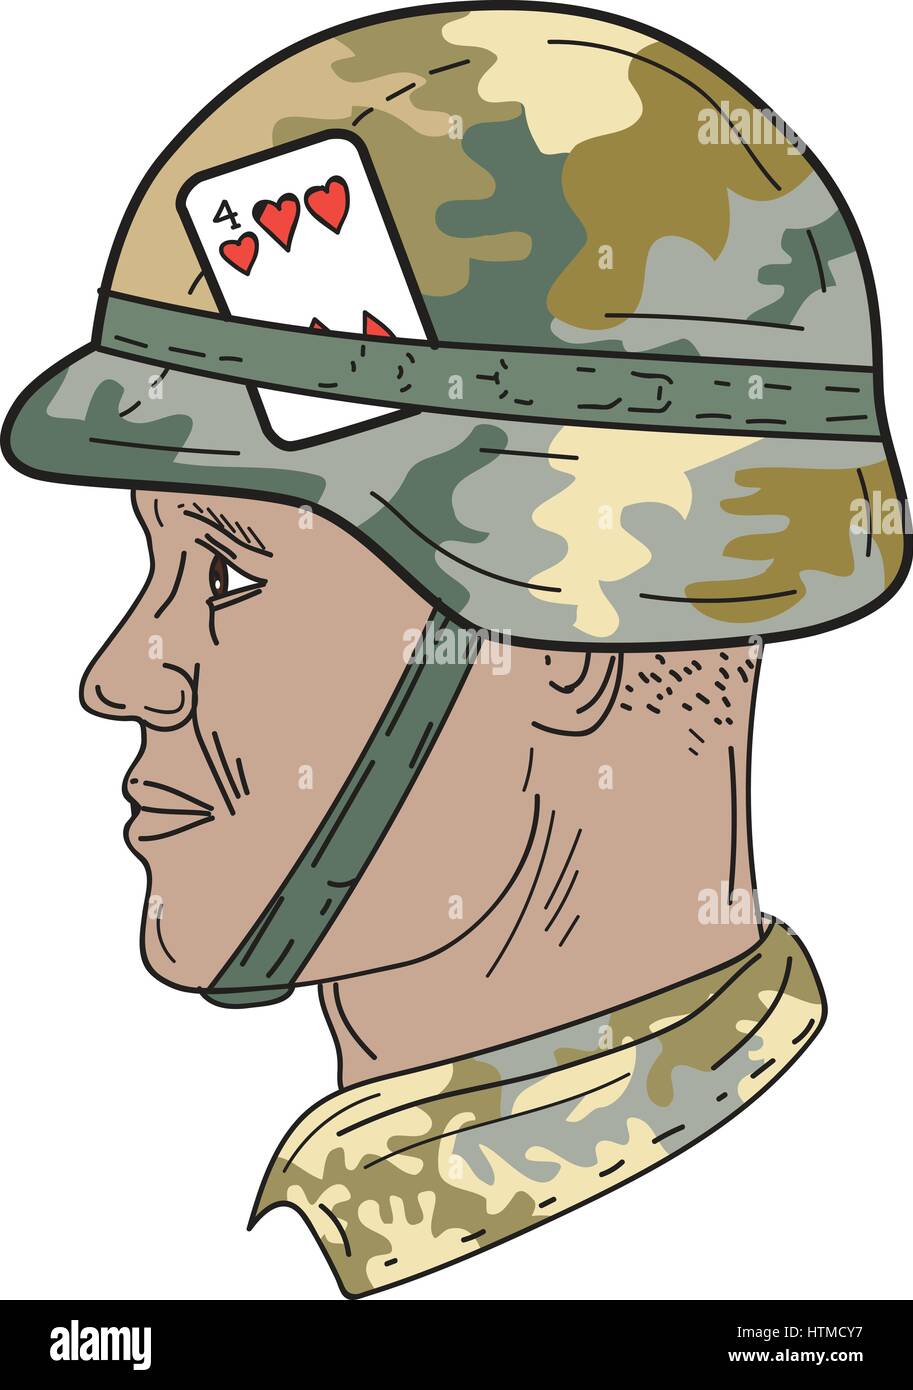 Zeichnung Skizze Stil Abbildung eines afroamerikanischen Soldaten tragen uns Armee Kevlar Helm mit Camouflage Tuch abdecken und vier Herzen p zu bekämpfen Stock Vektor